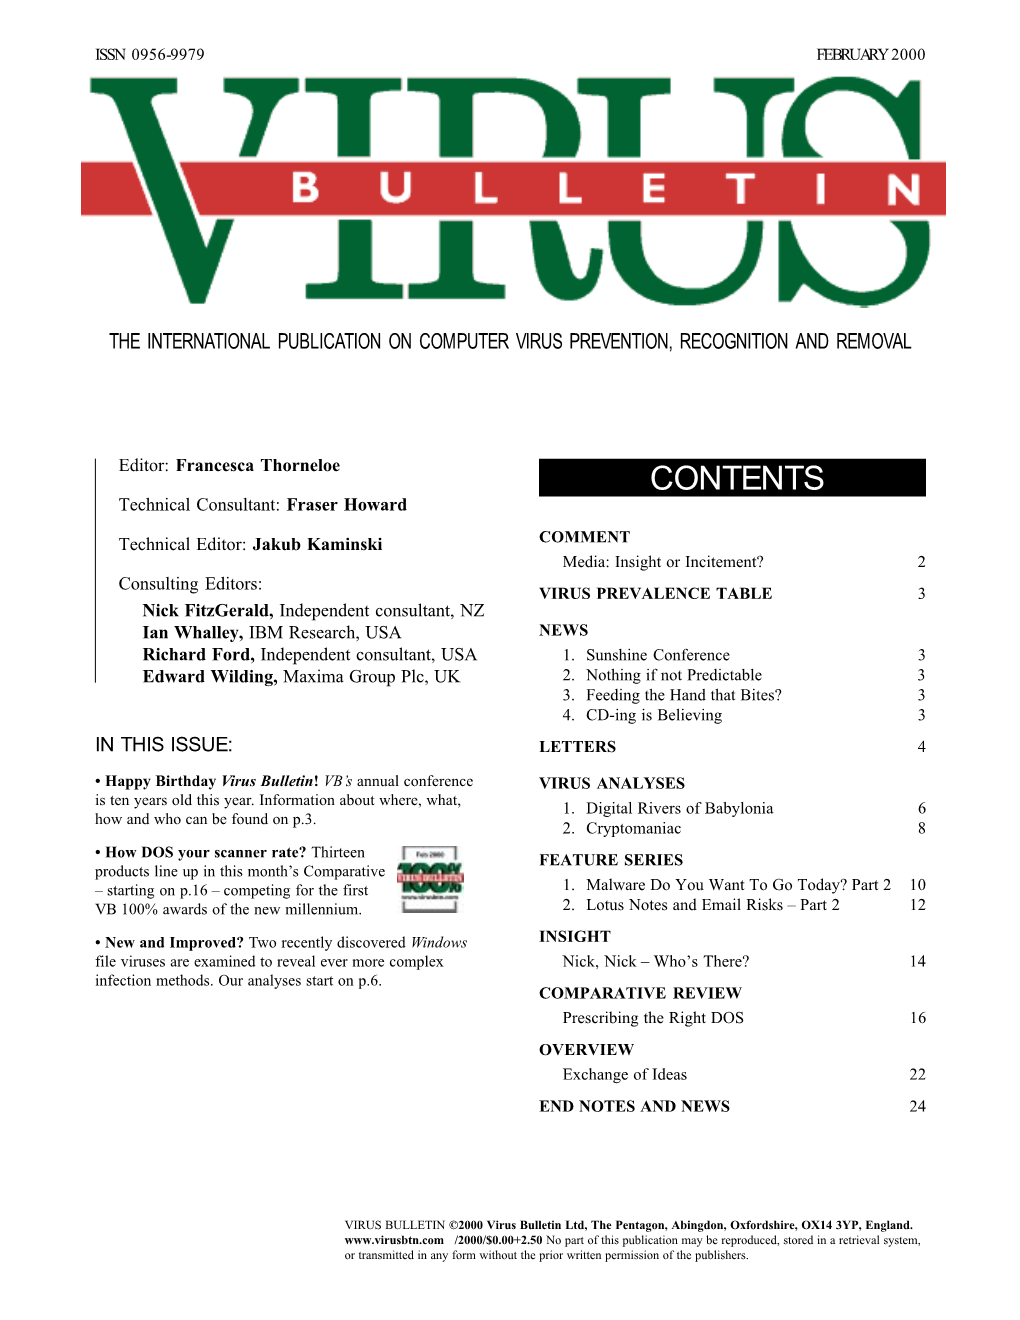 Virus Bulletin, February 2000